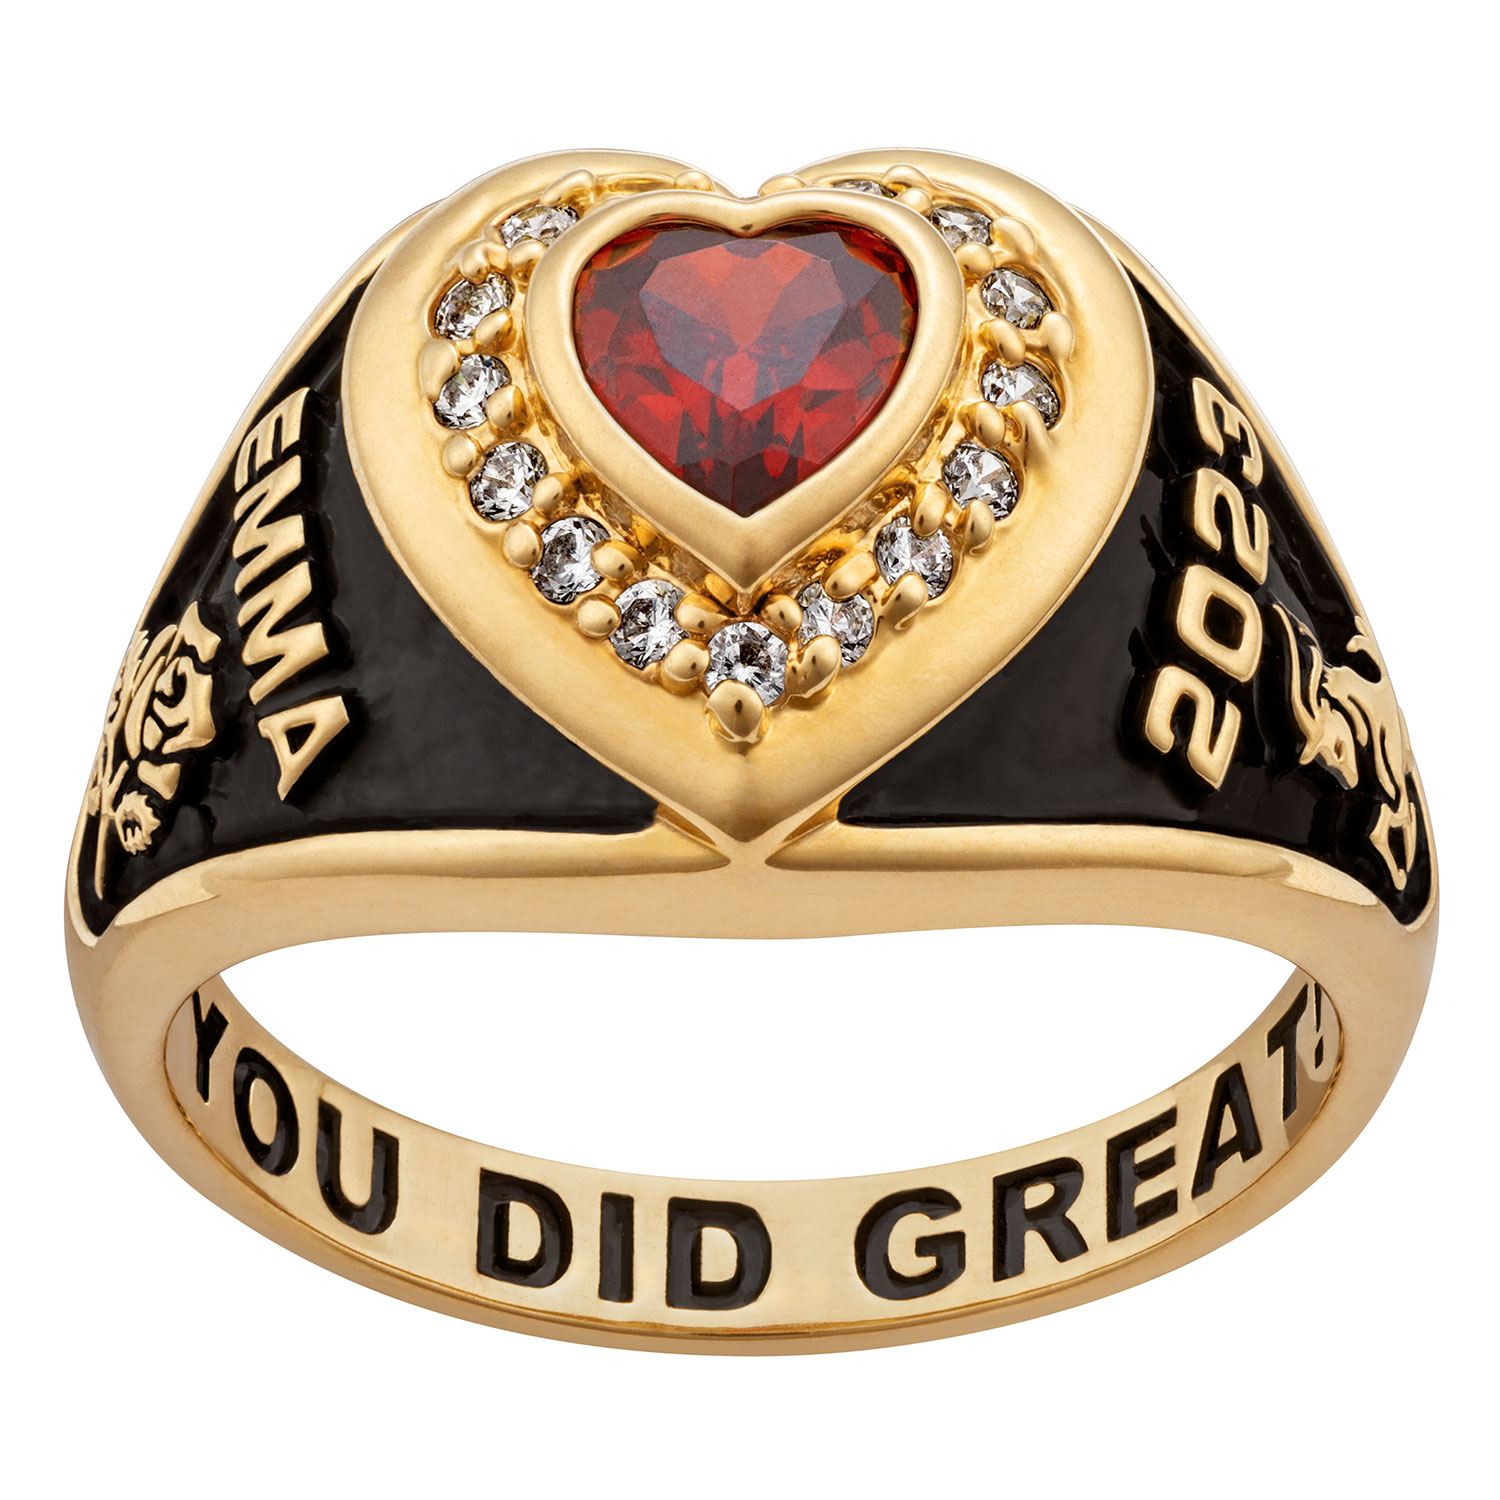 Ladies' Class Ring in Gold Over Celebrium 